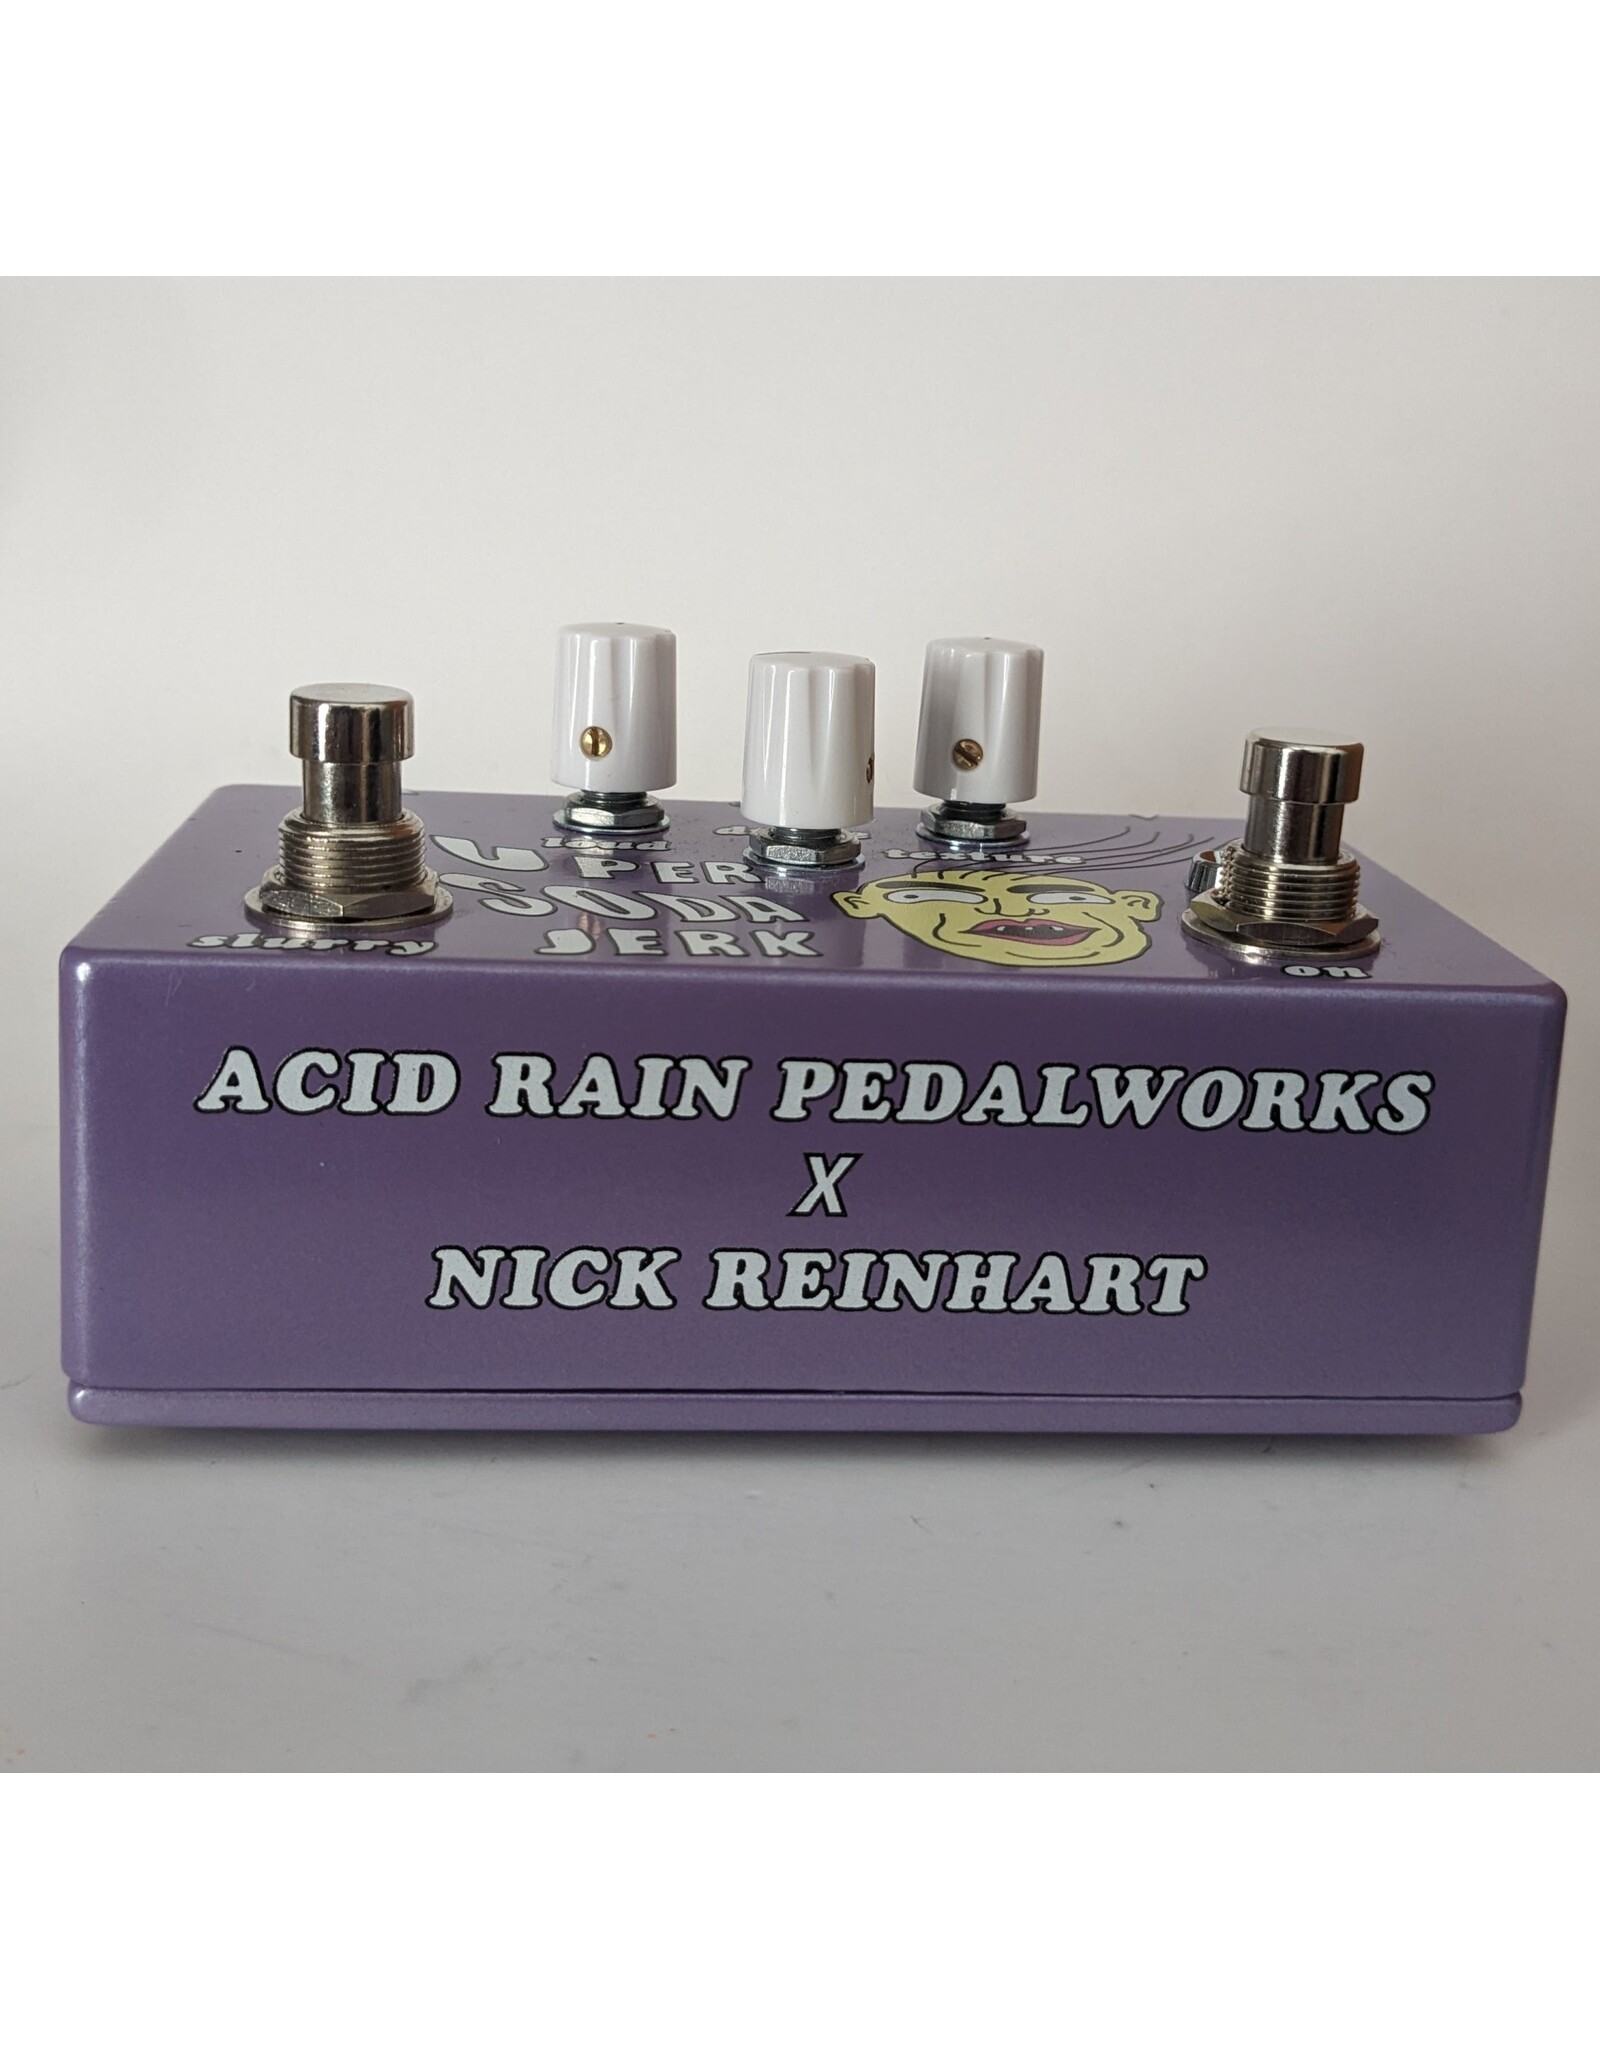 Acid Rain Pedalworks Super Soda Jerk Fuzz with Drone w/ Box, Used